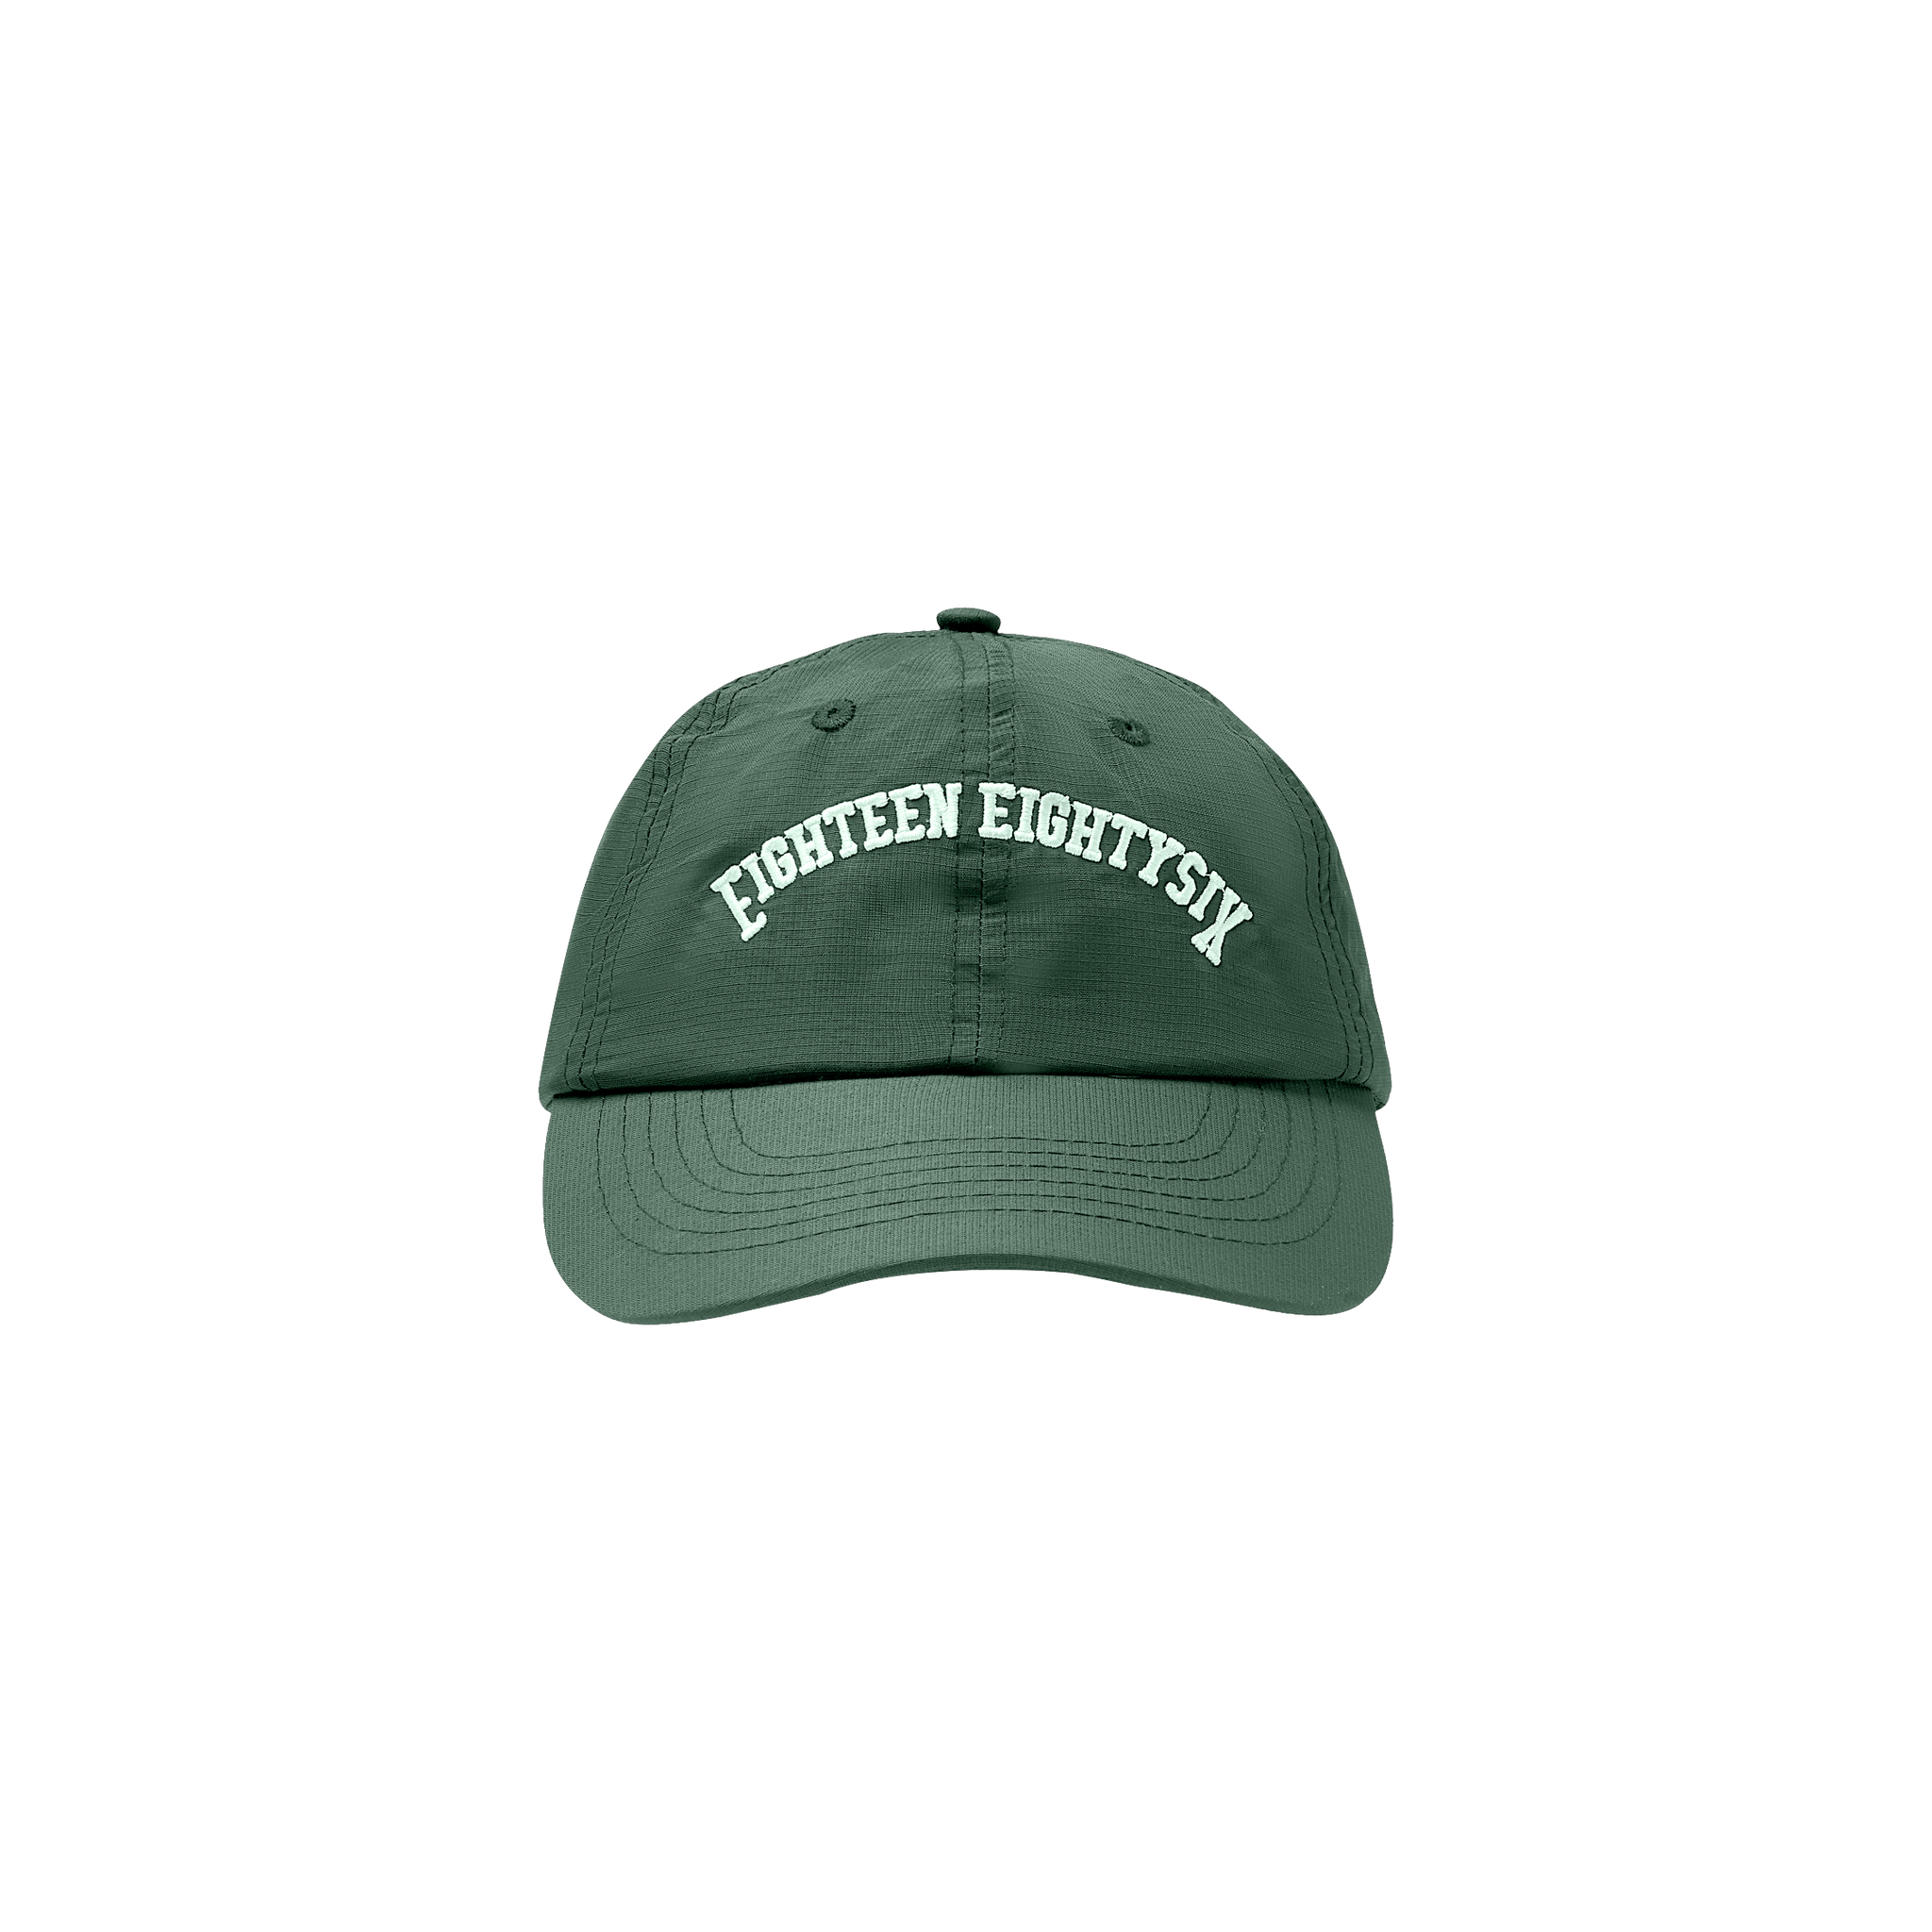 قبعة EIGHTEEN EIGHTY SIX - اخضر غامق